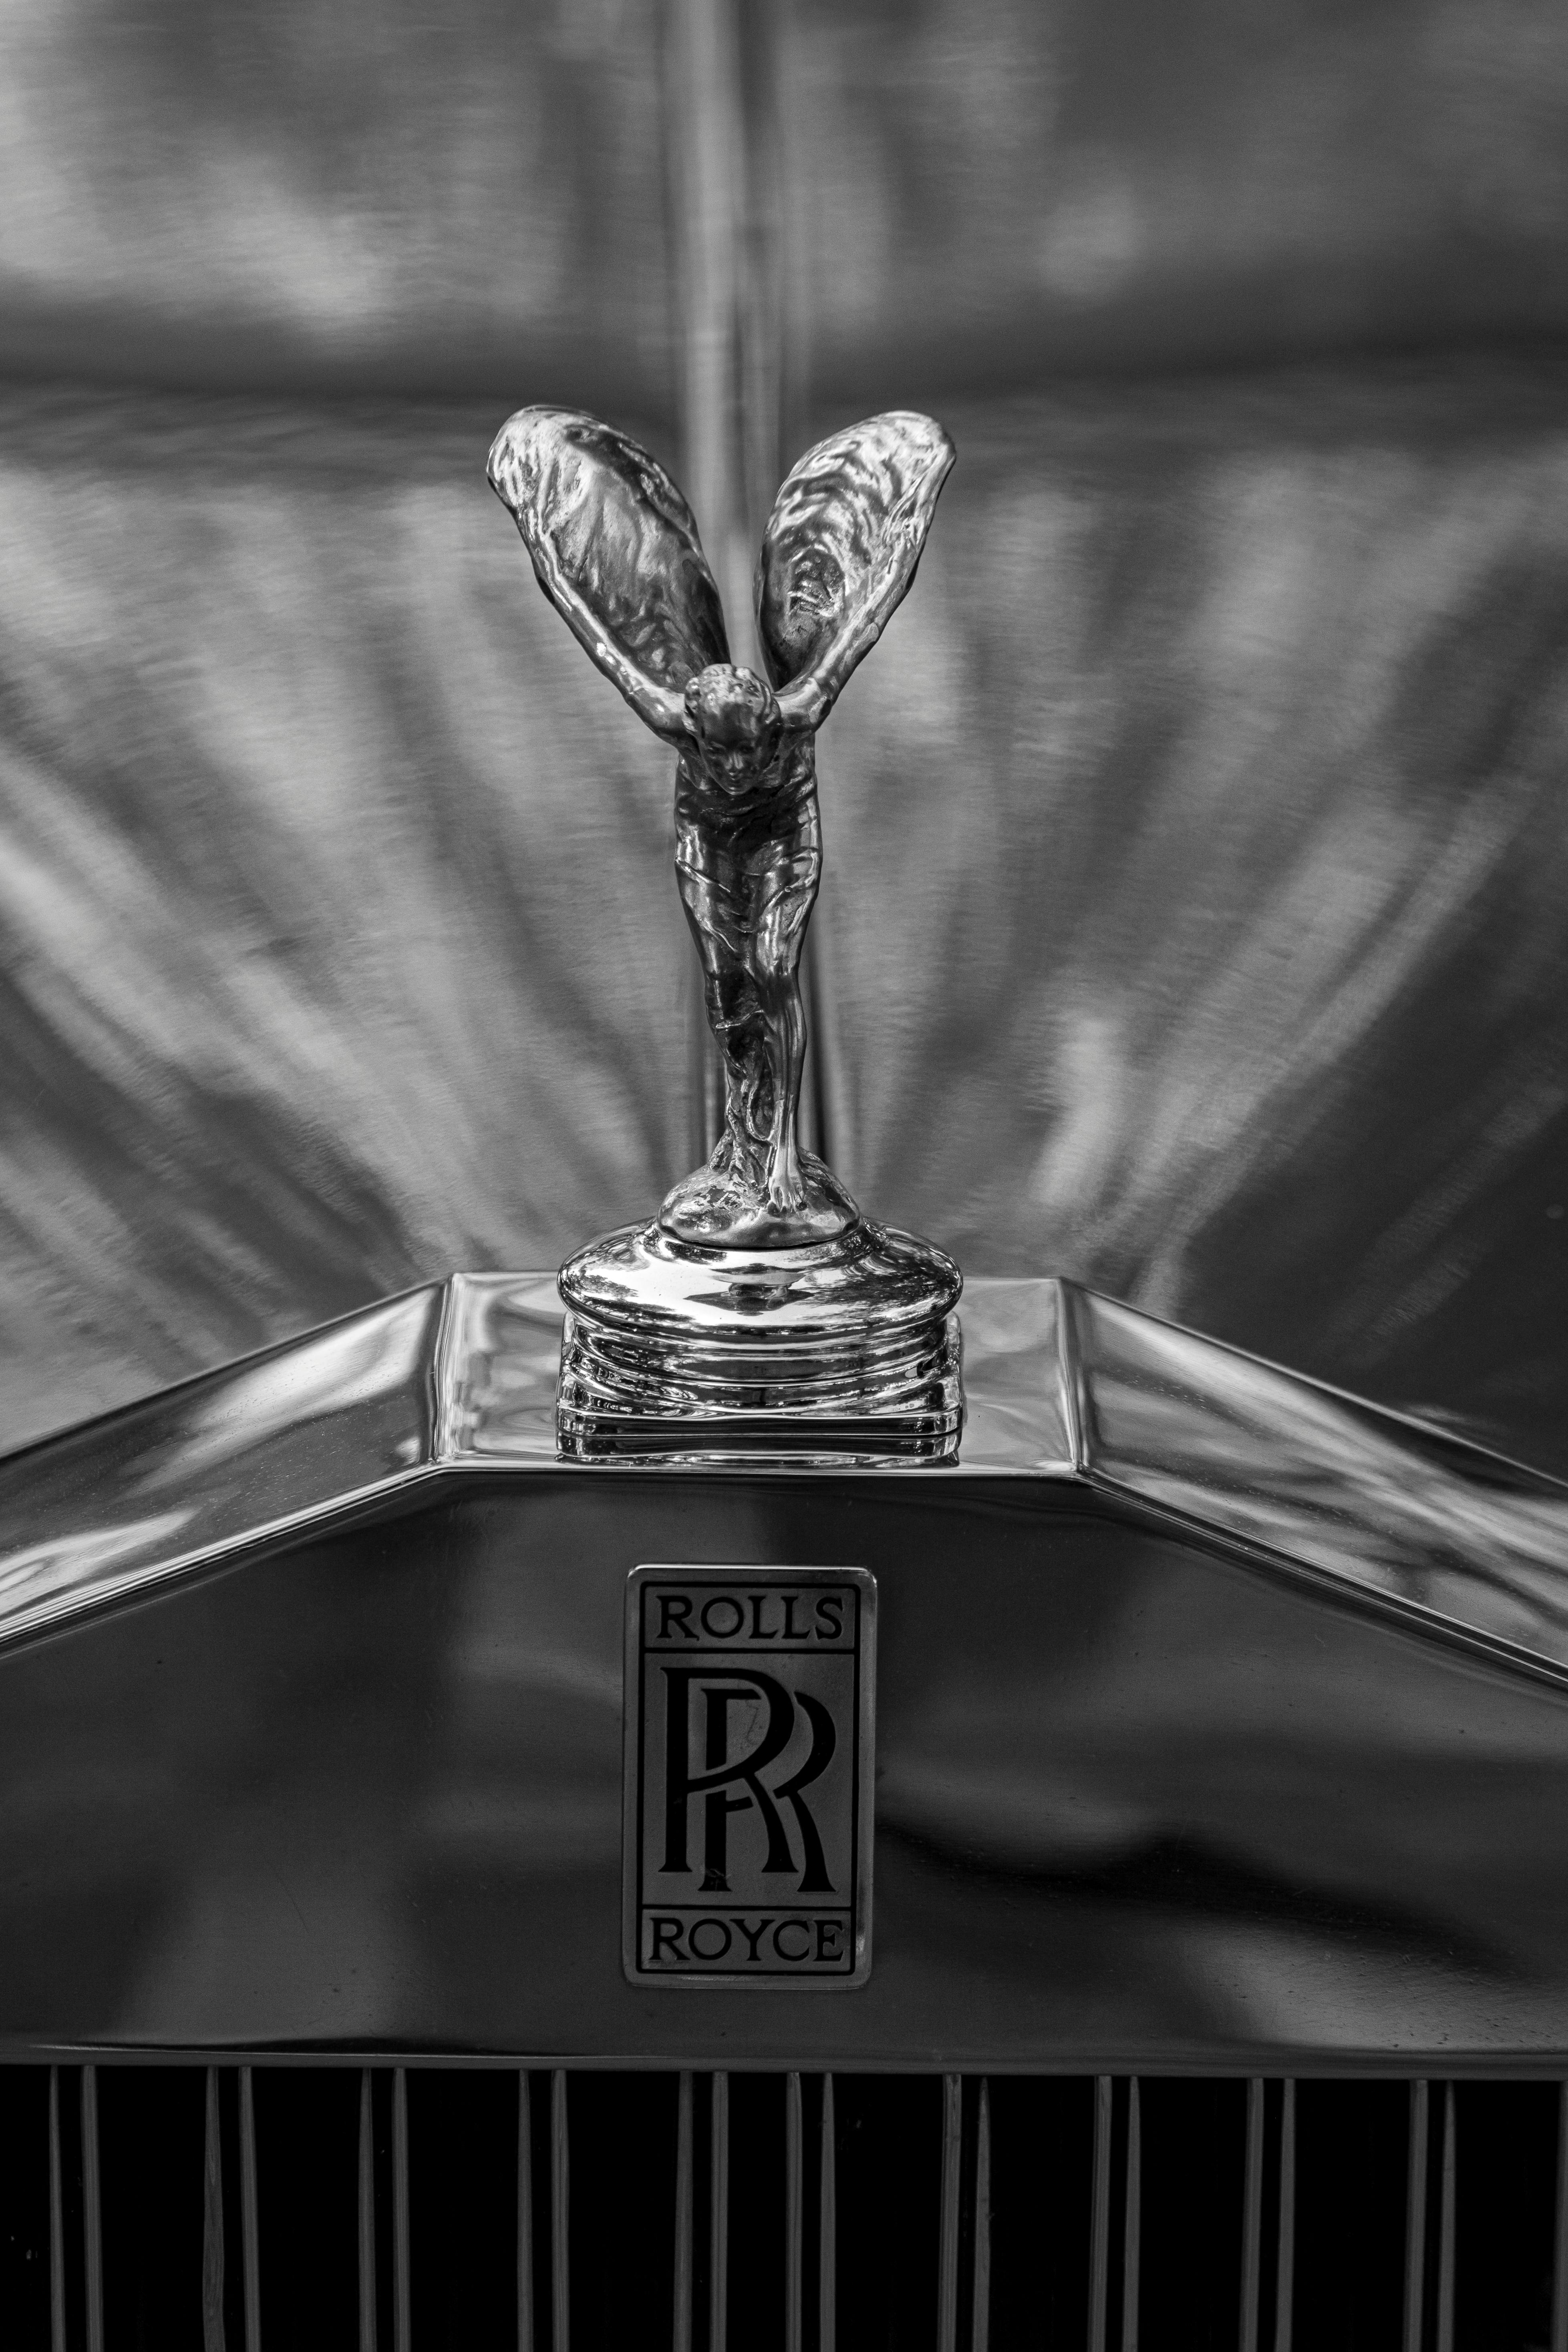 Rolls-Royce Ghost 2021 trình làng: Vẻ đẹp ma mị, lưới tản nhiệt là điểm nhấn